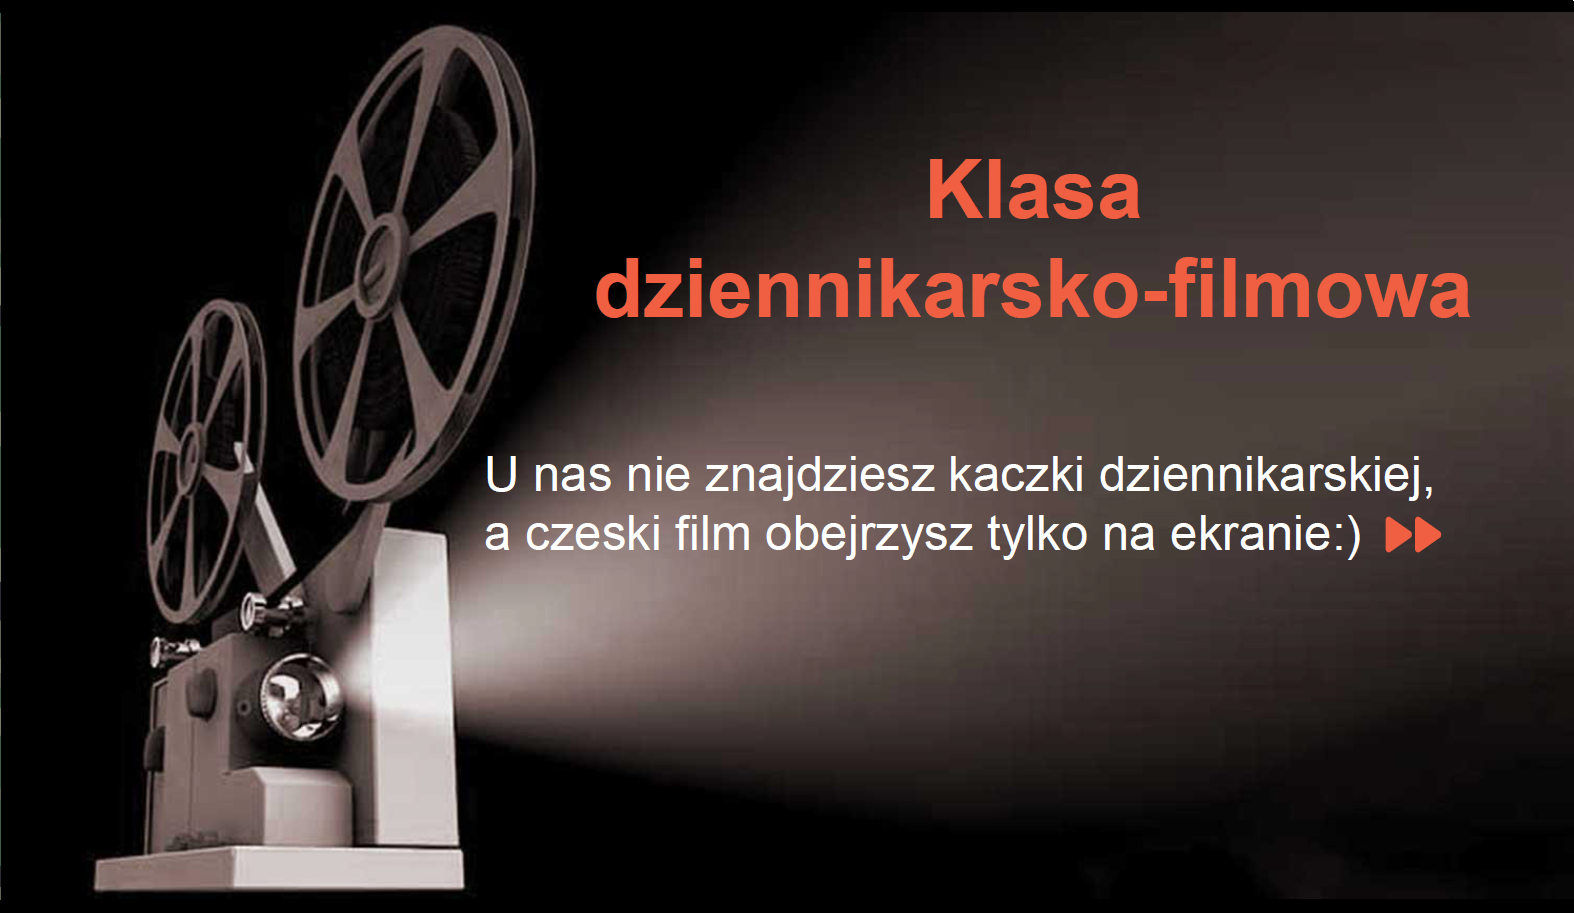 klasa dziennikarsko-filmowa napis U nas nie znajdziesz kaczki dziennikarskiej, a czeski film obejrzysz tylko na ekranie